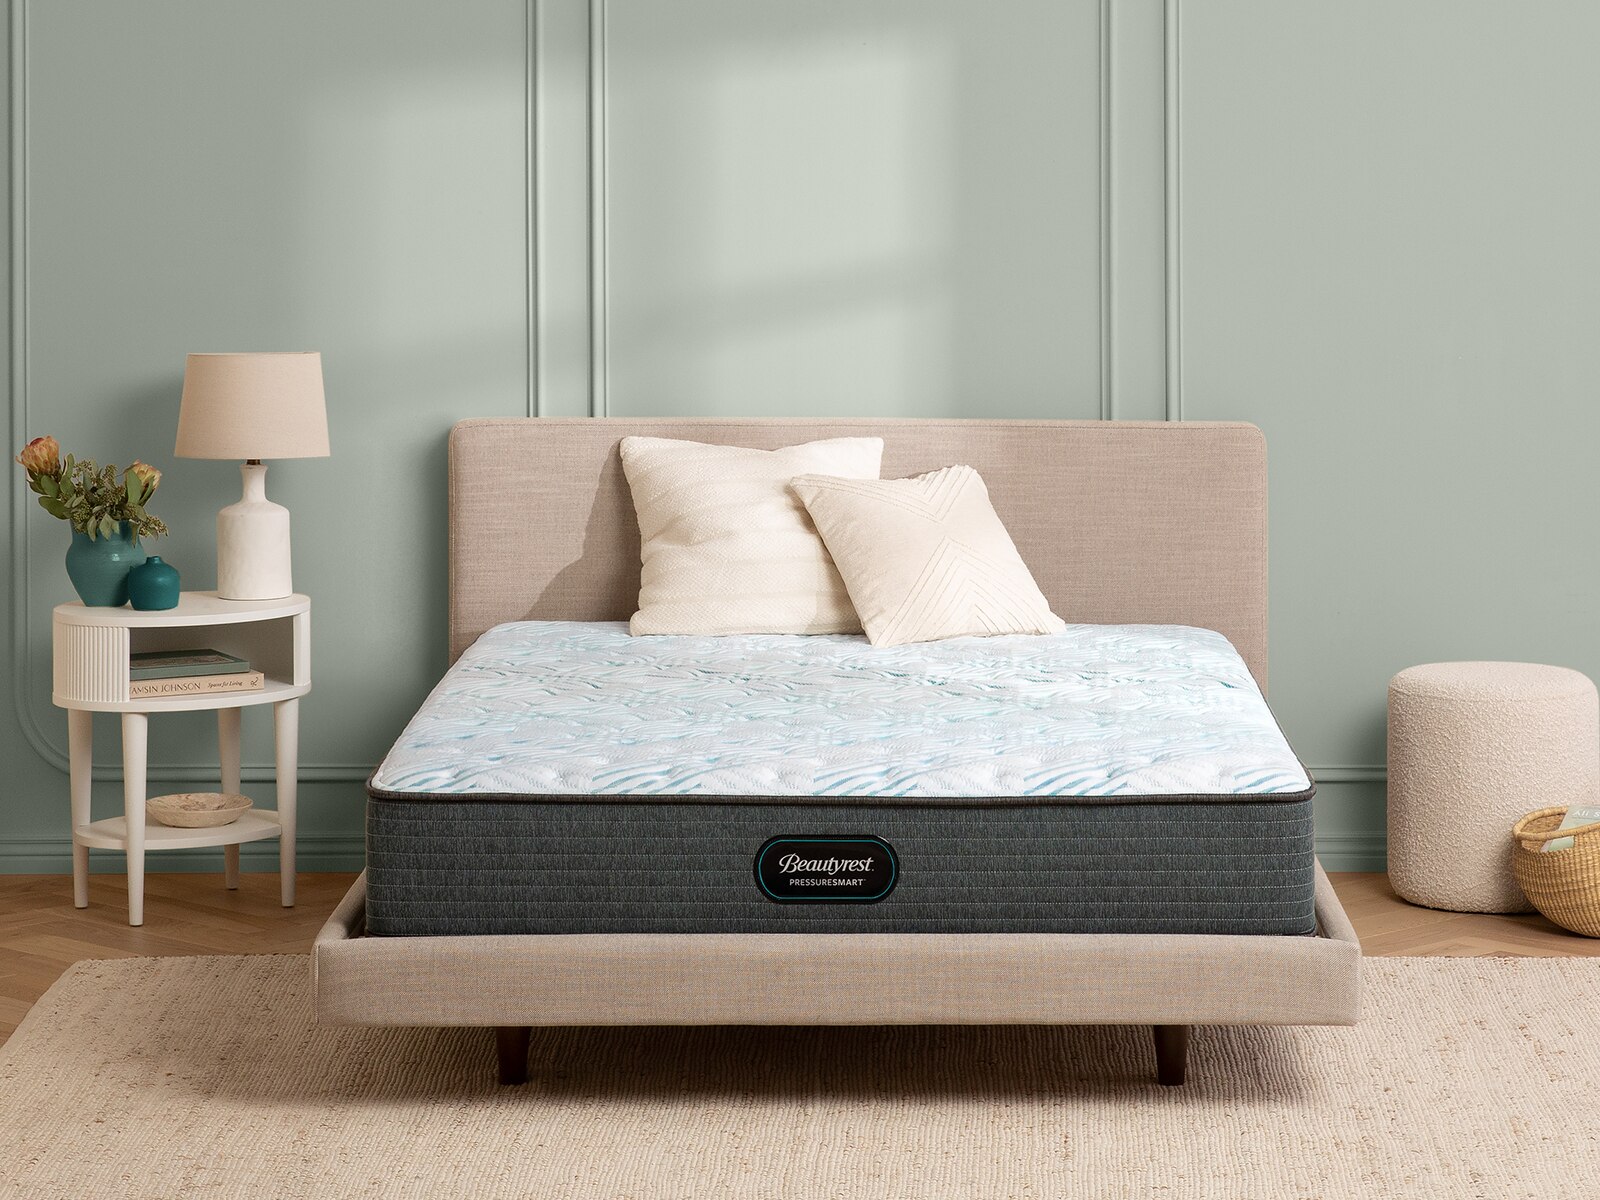 pressuresmart 11.5 firm mattress review